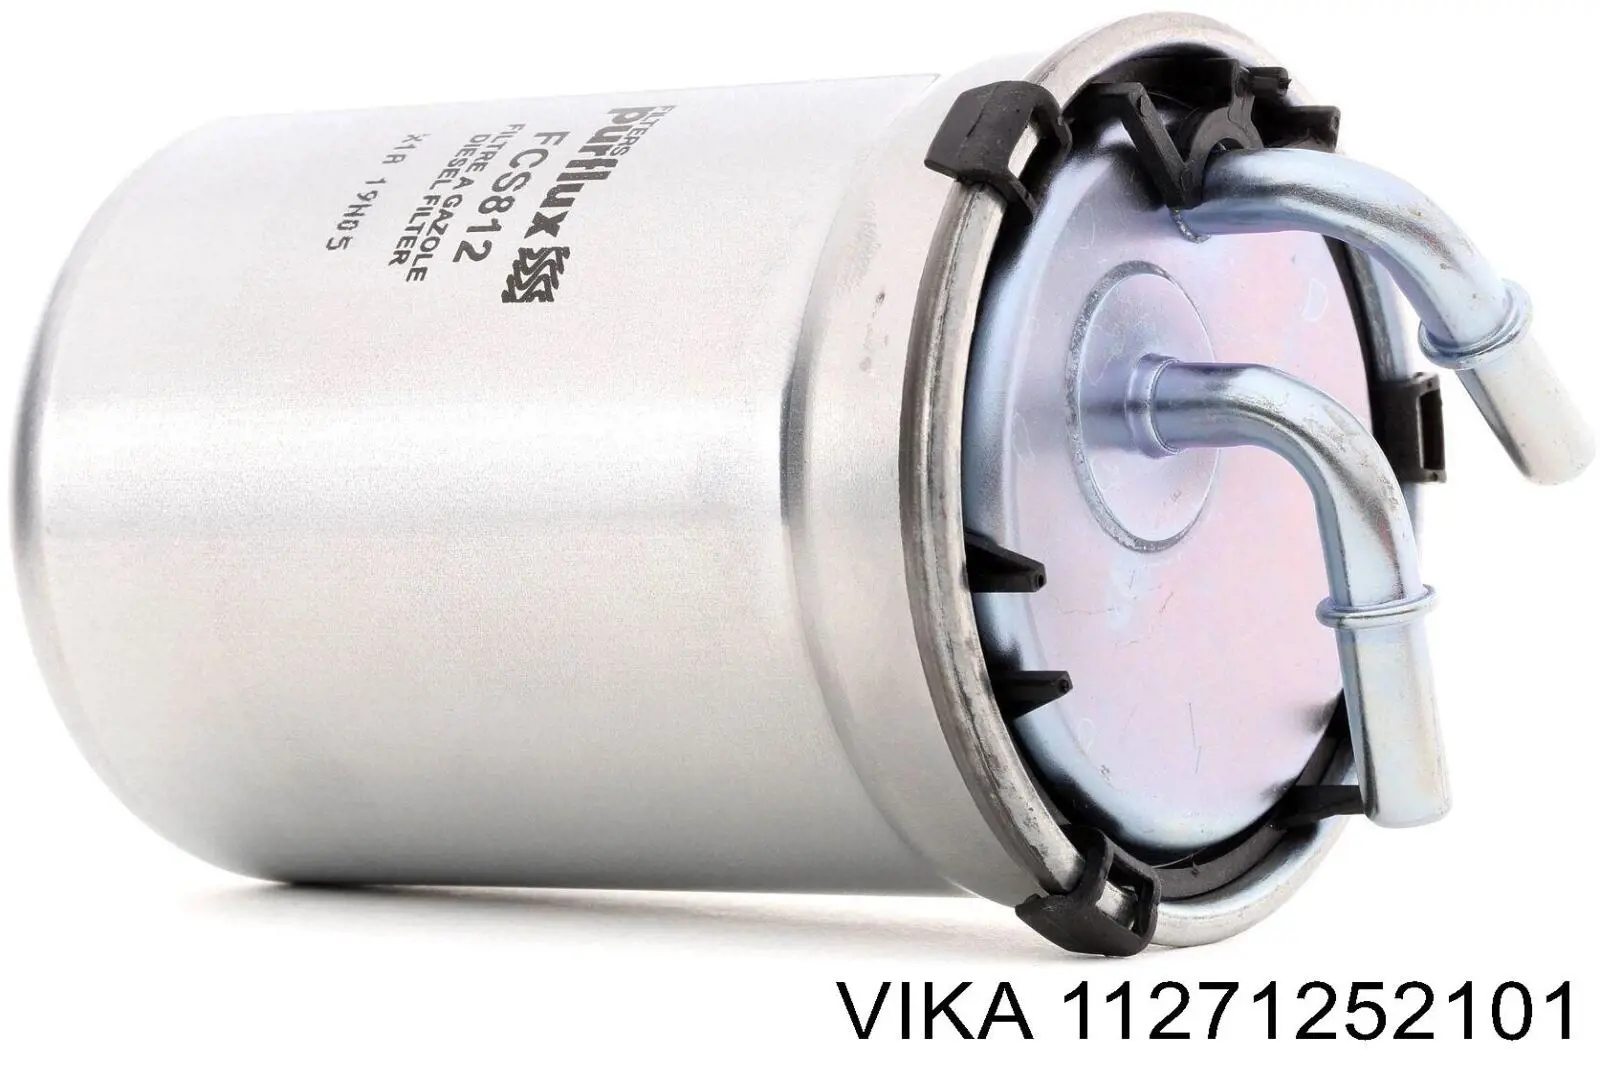 11271252101 Vika filtro de combustible